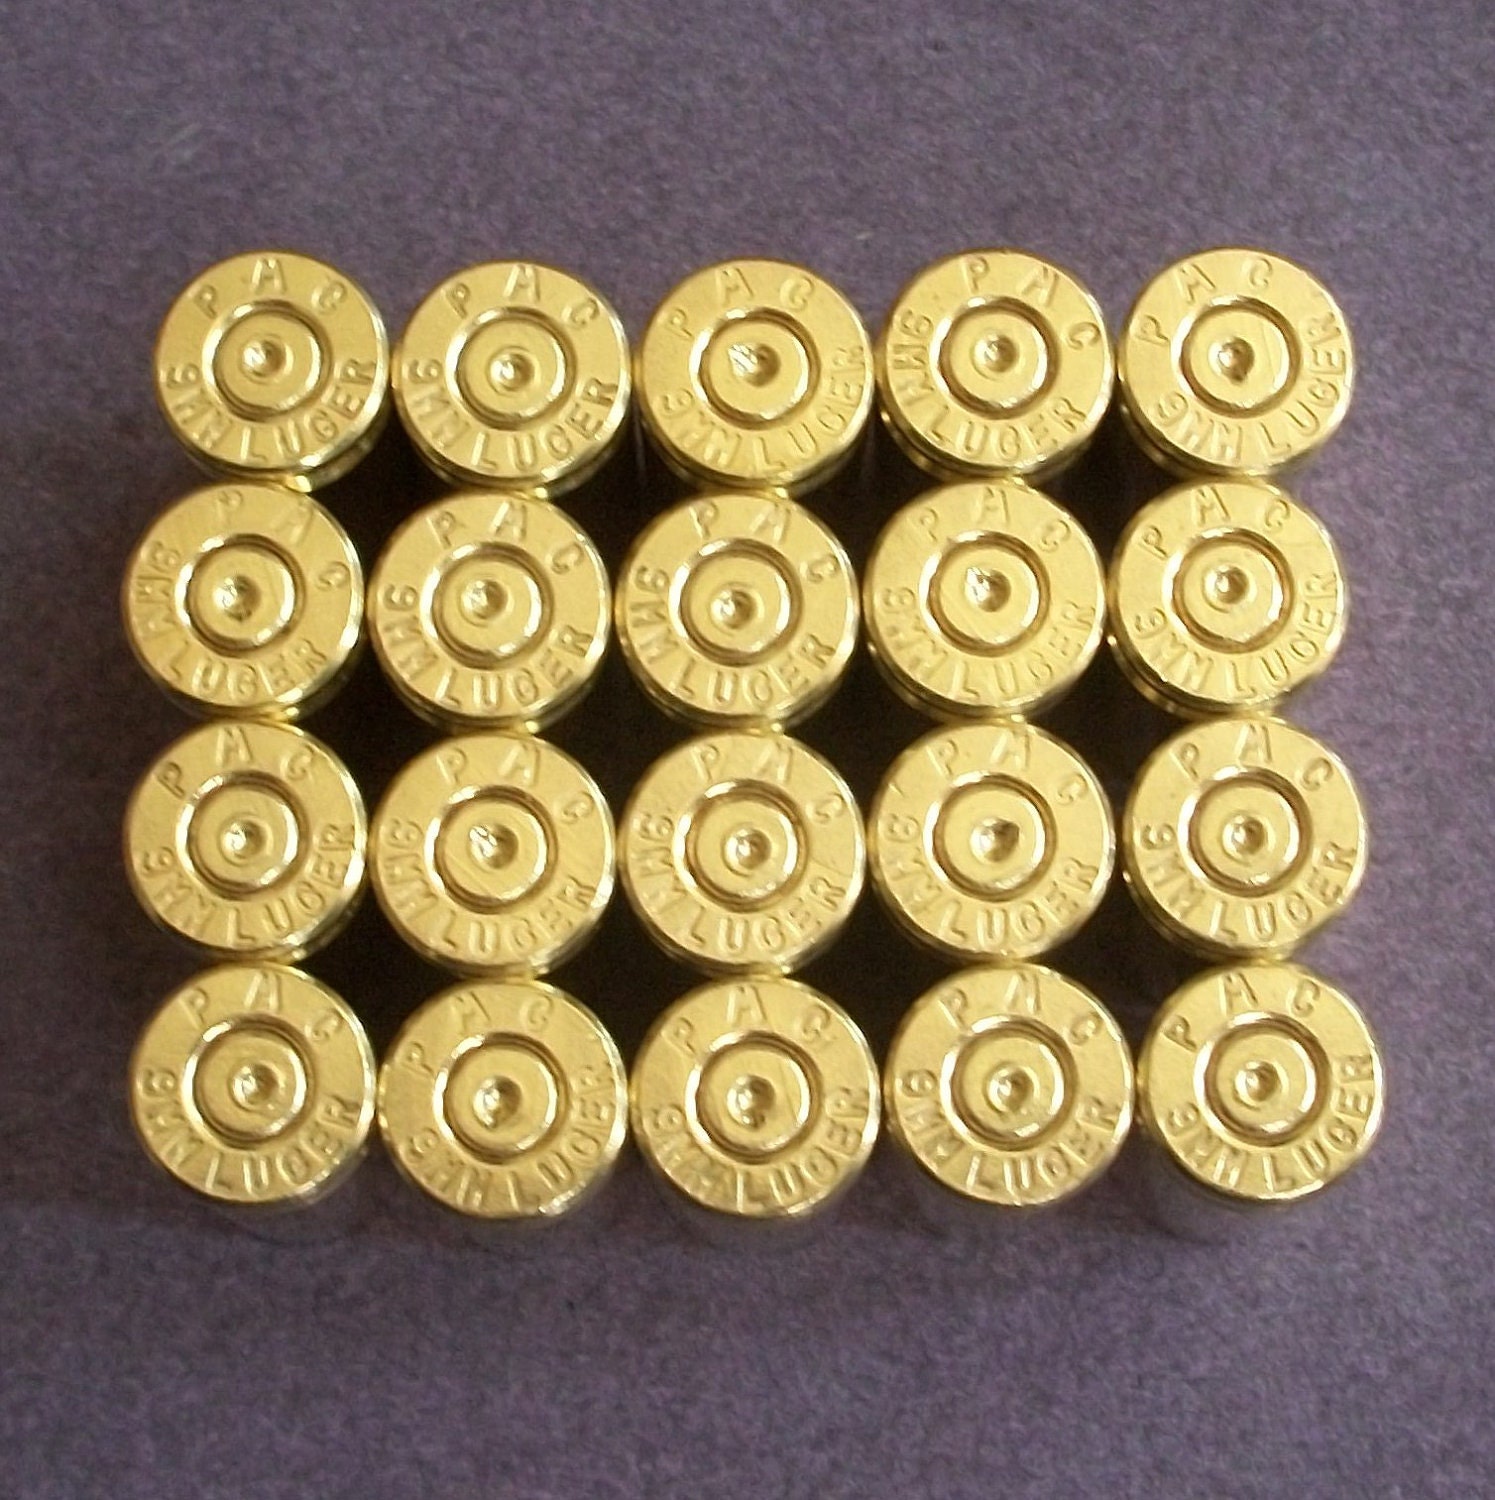 9mm brass casings